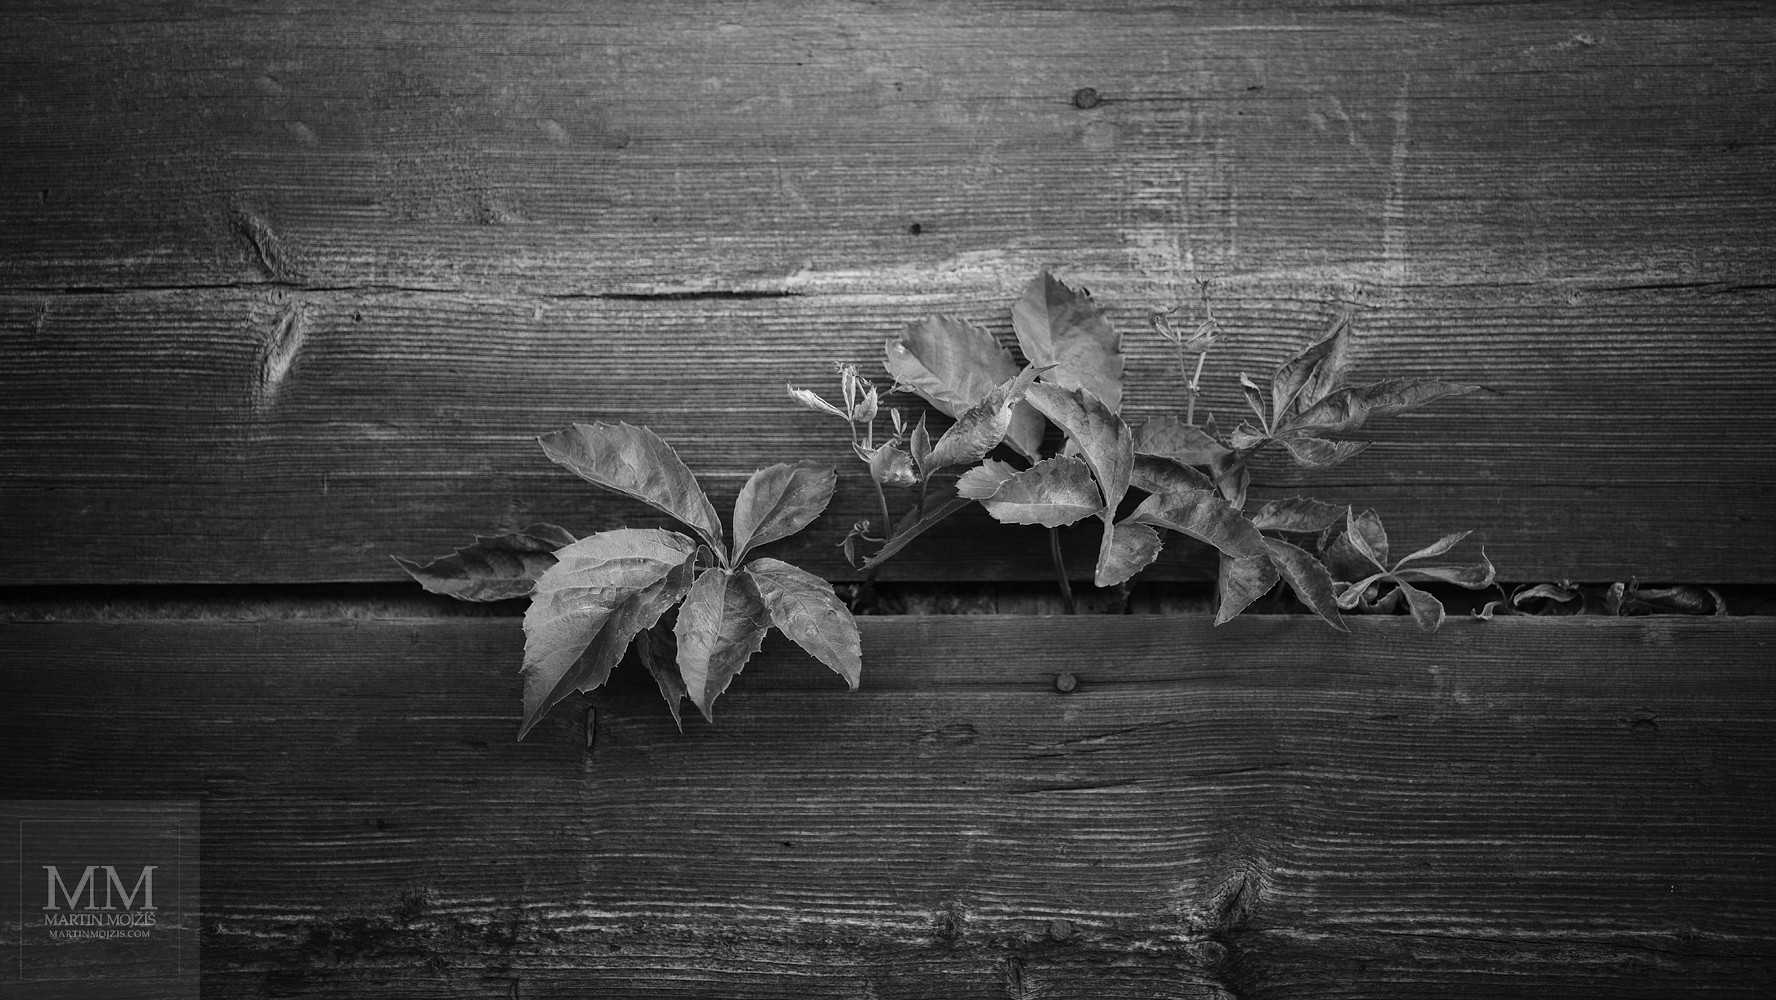 Keř roste mezerou mezi prkny. Umělecká černobílá fotografie s názvem NAJDU CESTU. Fotograf Martin Mojžíš.